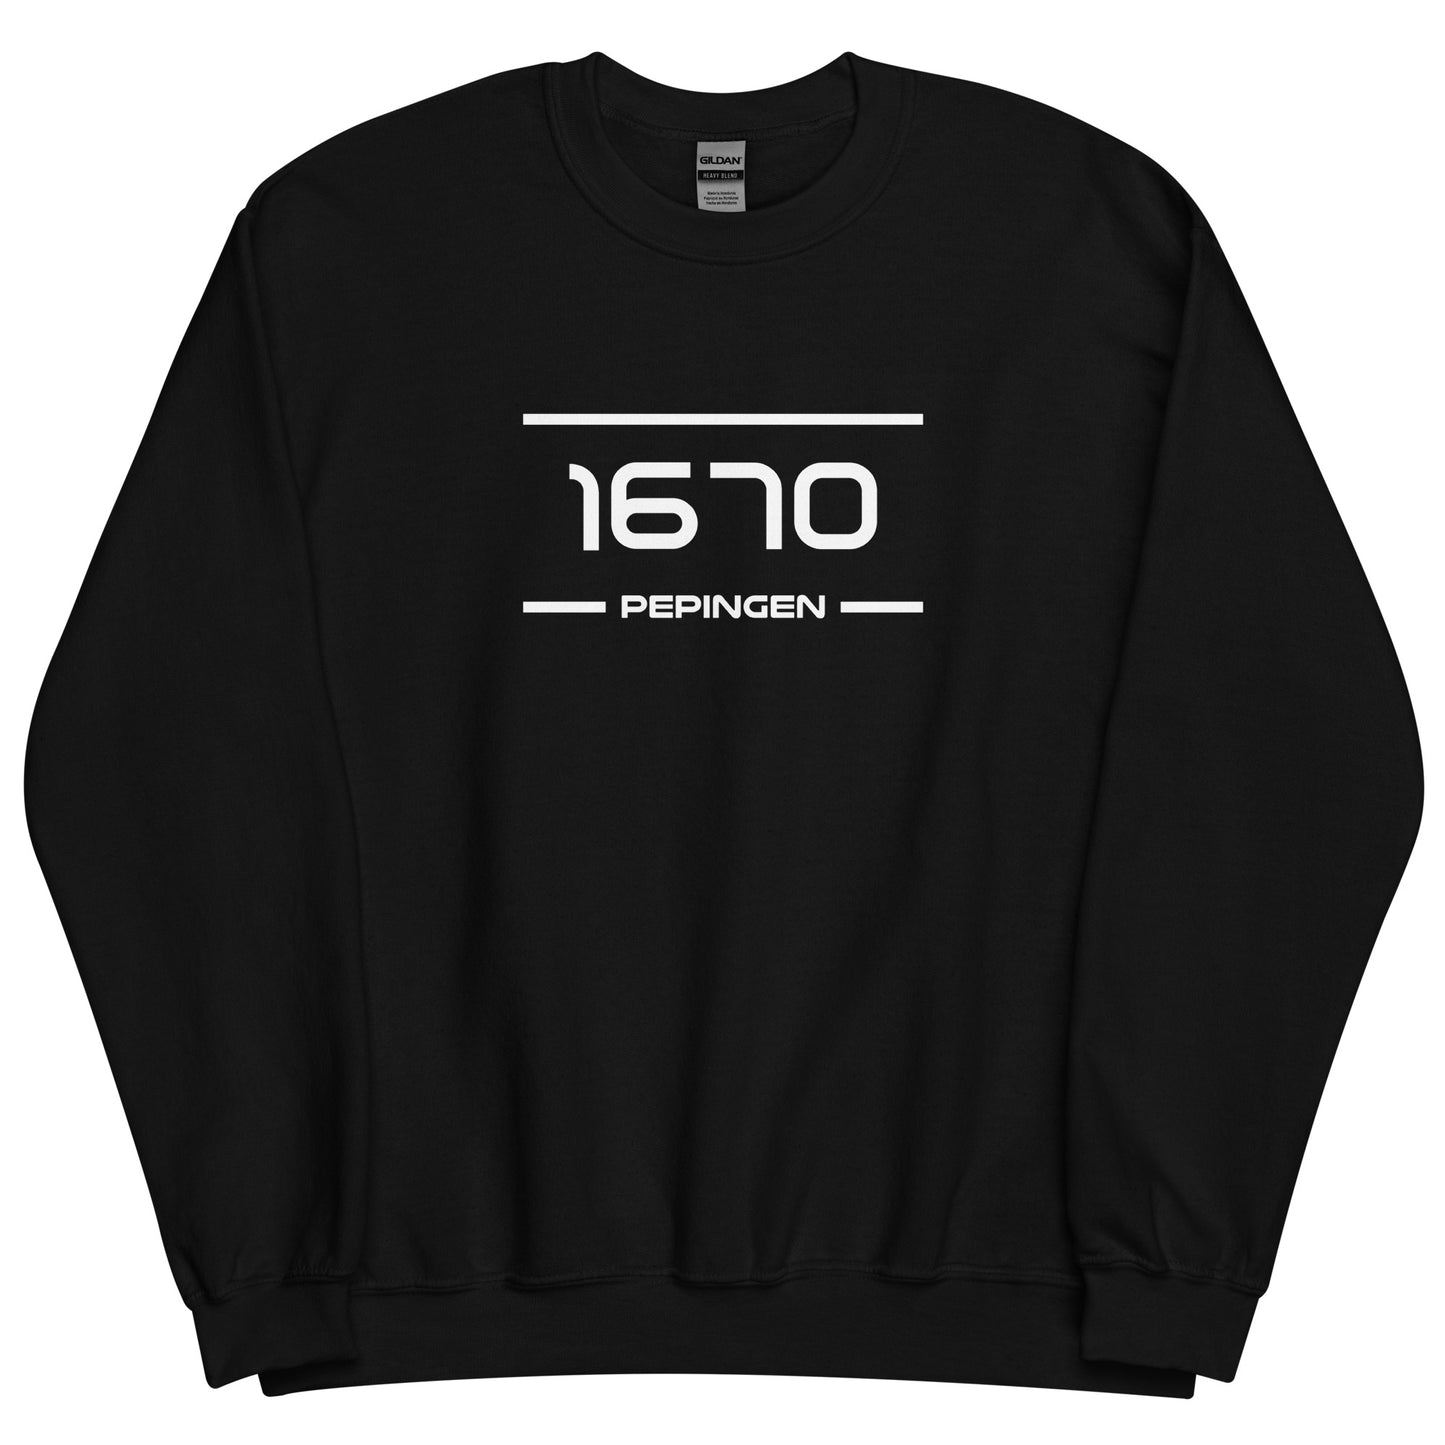 Sweater - 1670 - Pepingen (M/V)